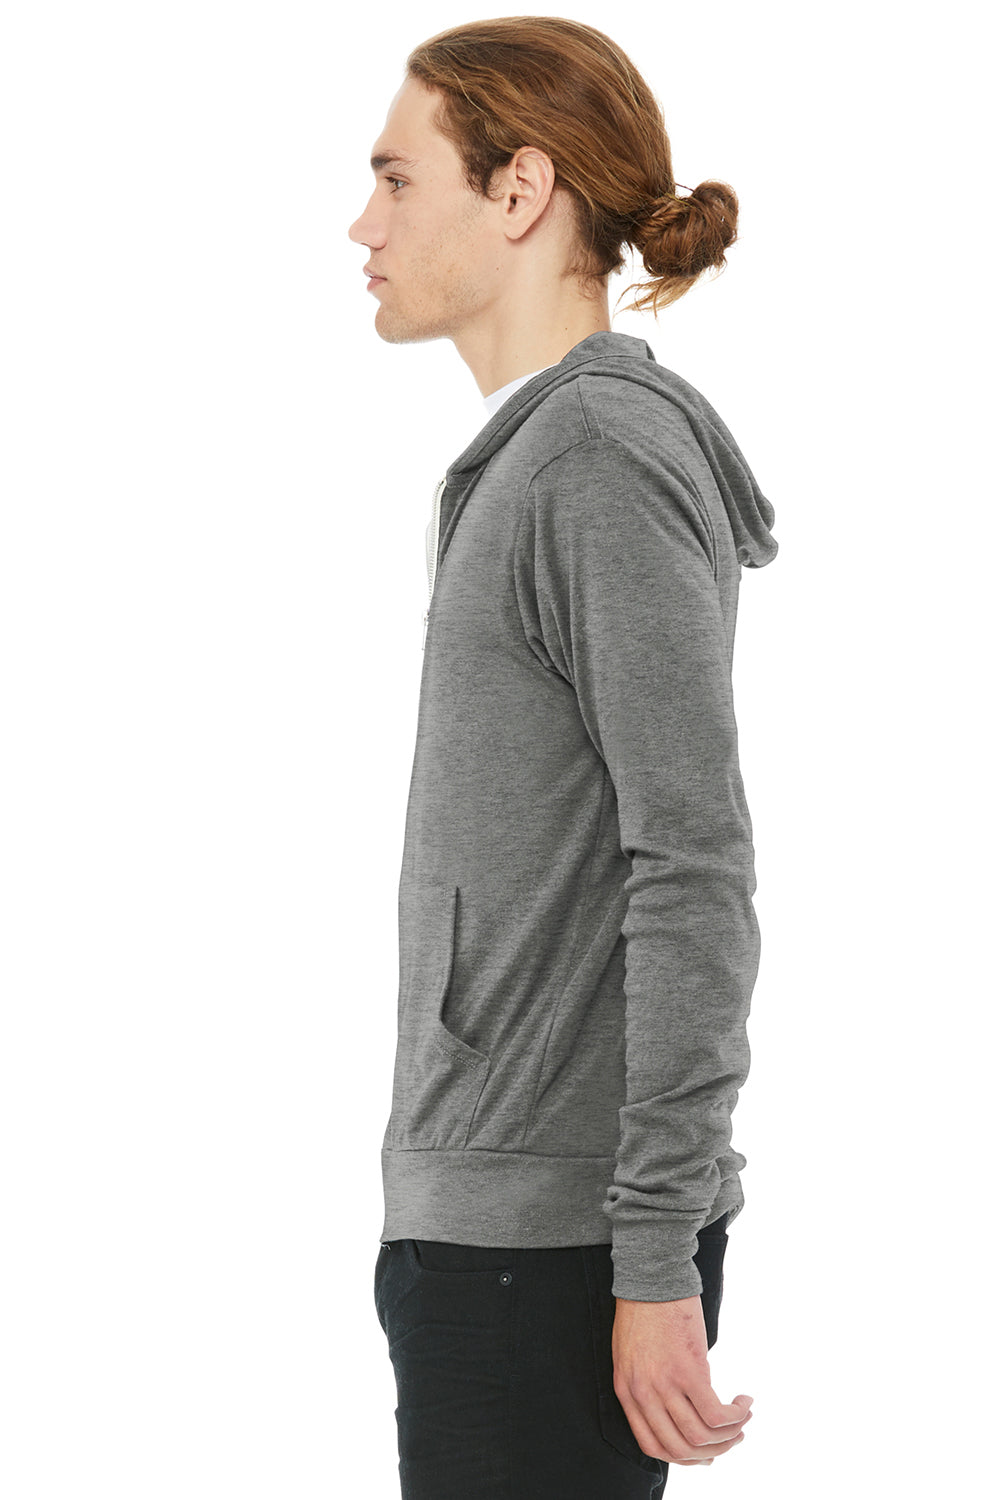 Bella + Canvas BC3939/3939 Mens Full Zip Long Sleeve Hooded T-Shirt Hoodie Grey Model Side